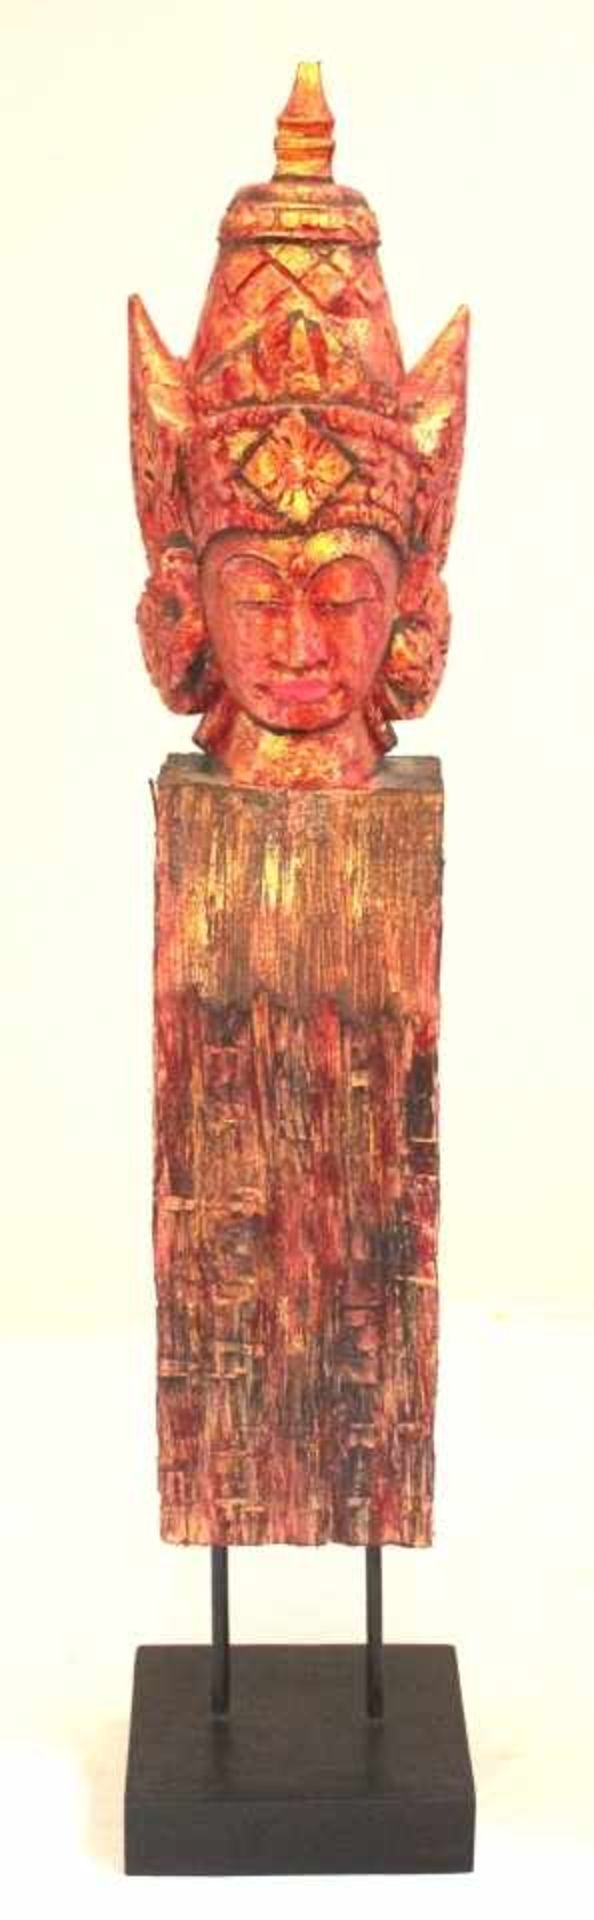 Figur - wohl Thailand 20.Jahrhundert "Weibliche Gottheit", Holz geschnitzt und gefaßt, quadratischer